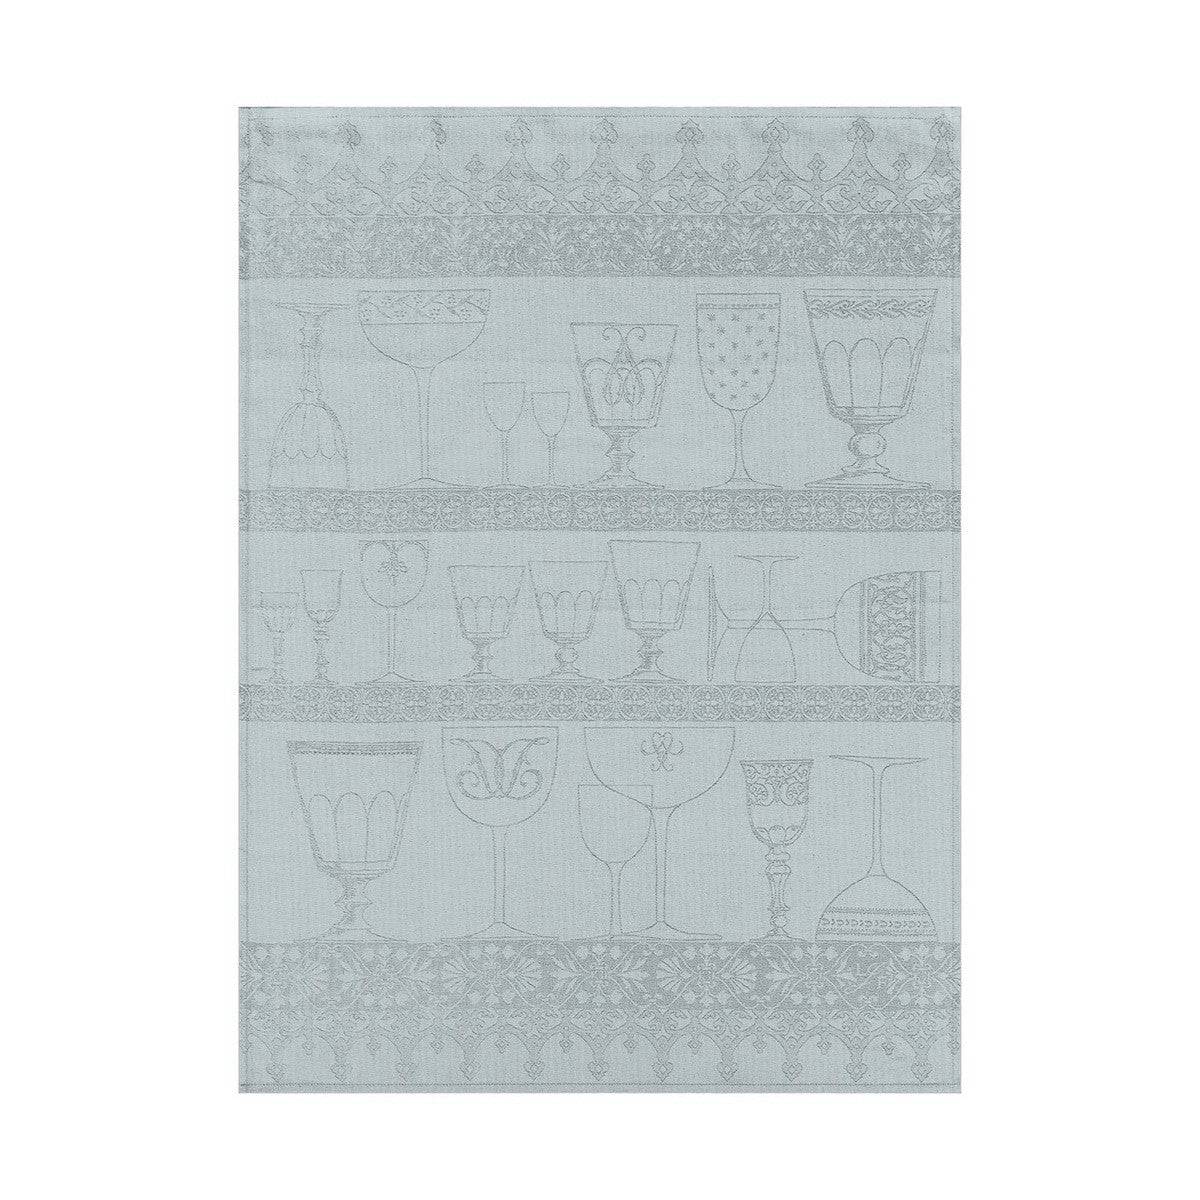 Le Jacquard Francais 100% Linen Crystal Tea Towel, Mist 24 x 31-in - Kitchen Universe